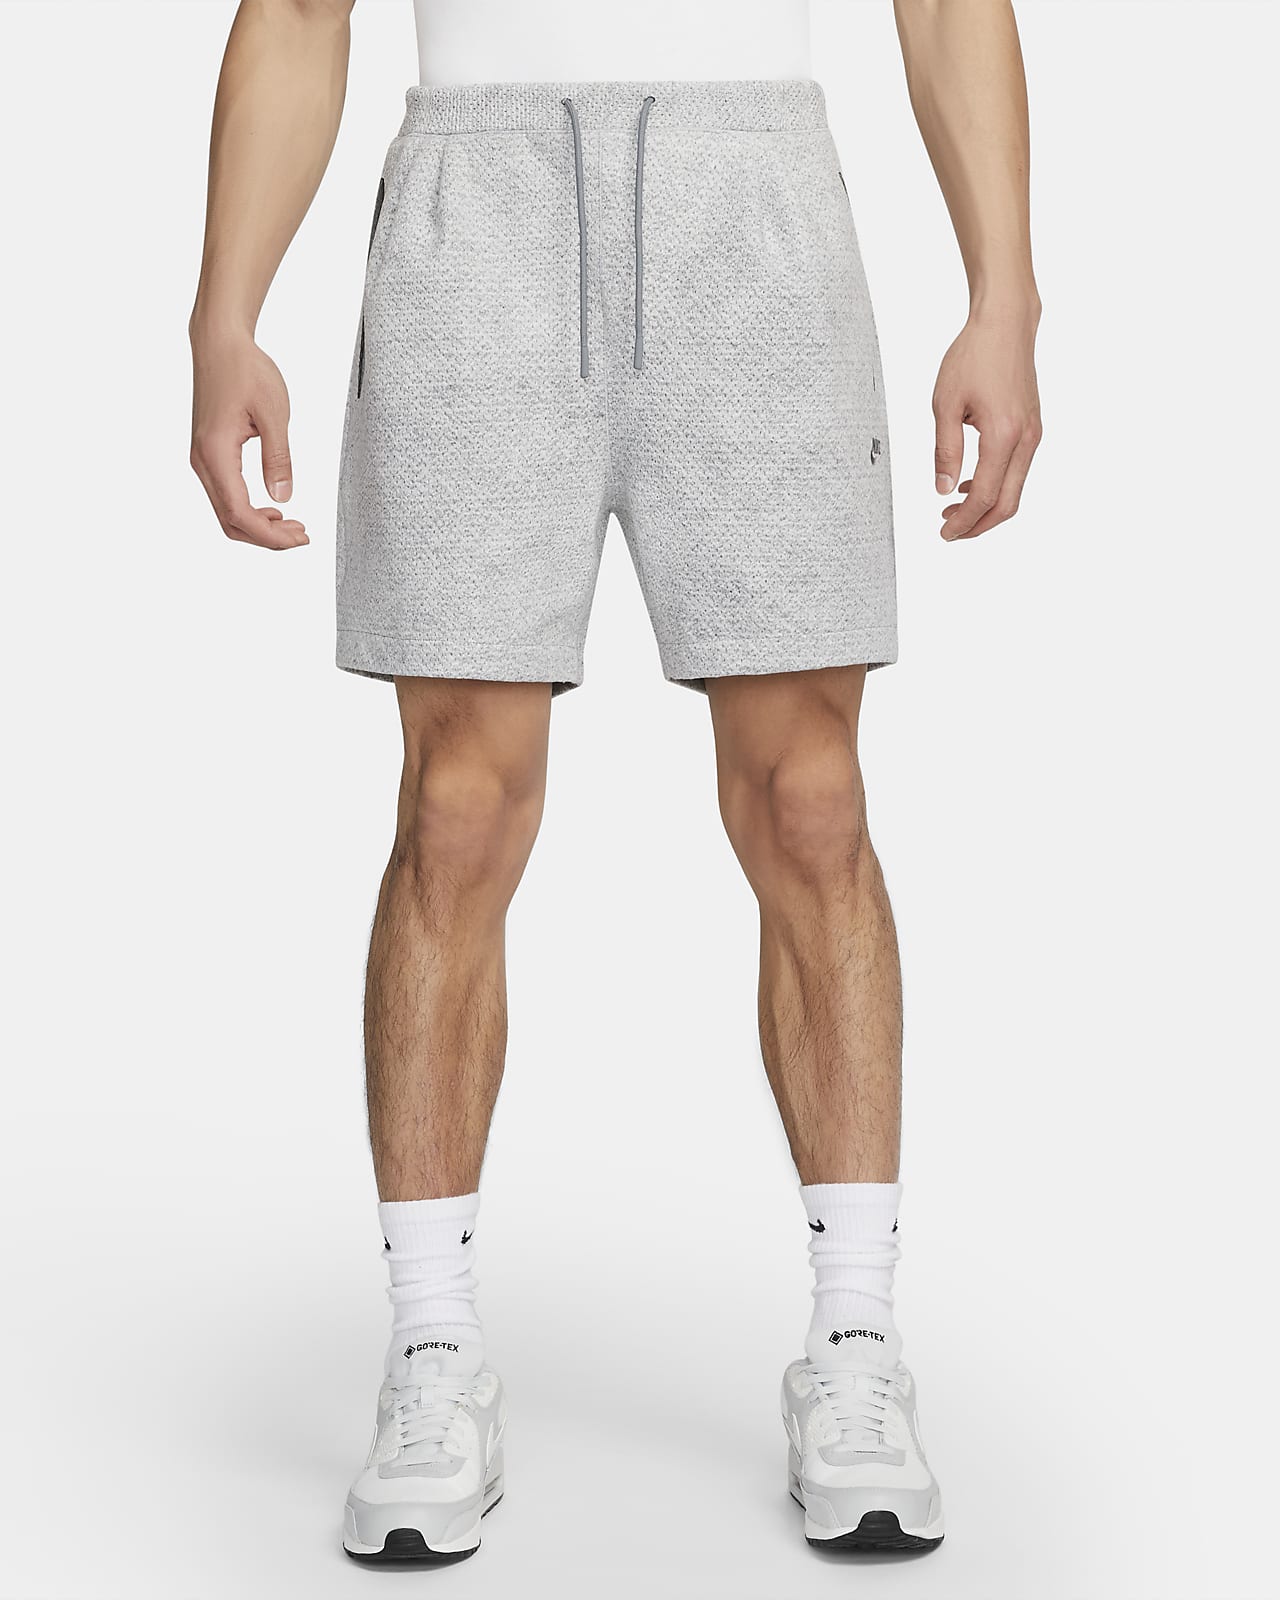 Nike Forward Shorts Men's Shorts. Nike DK